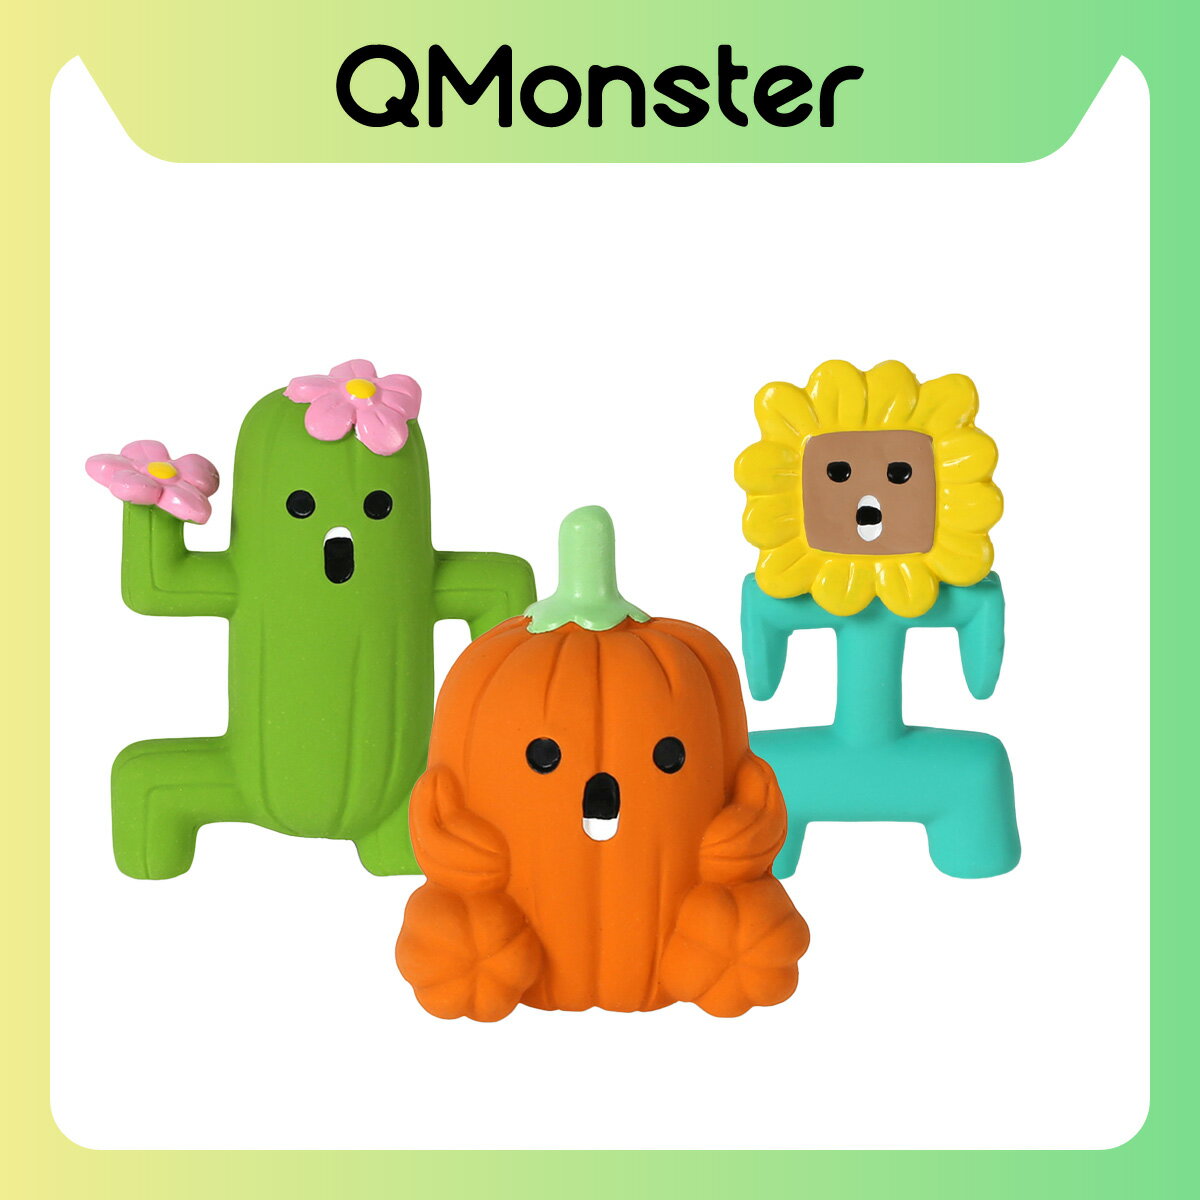 【Q-MONSTER】功夫家族 發聲玩具 狗玩具 發聲玩具 寵物玩具 毛絨玩具 狗狗玩具 Q MONSTER